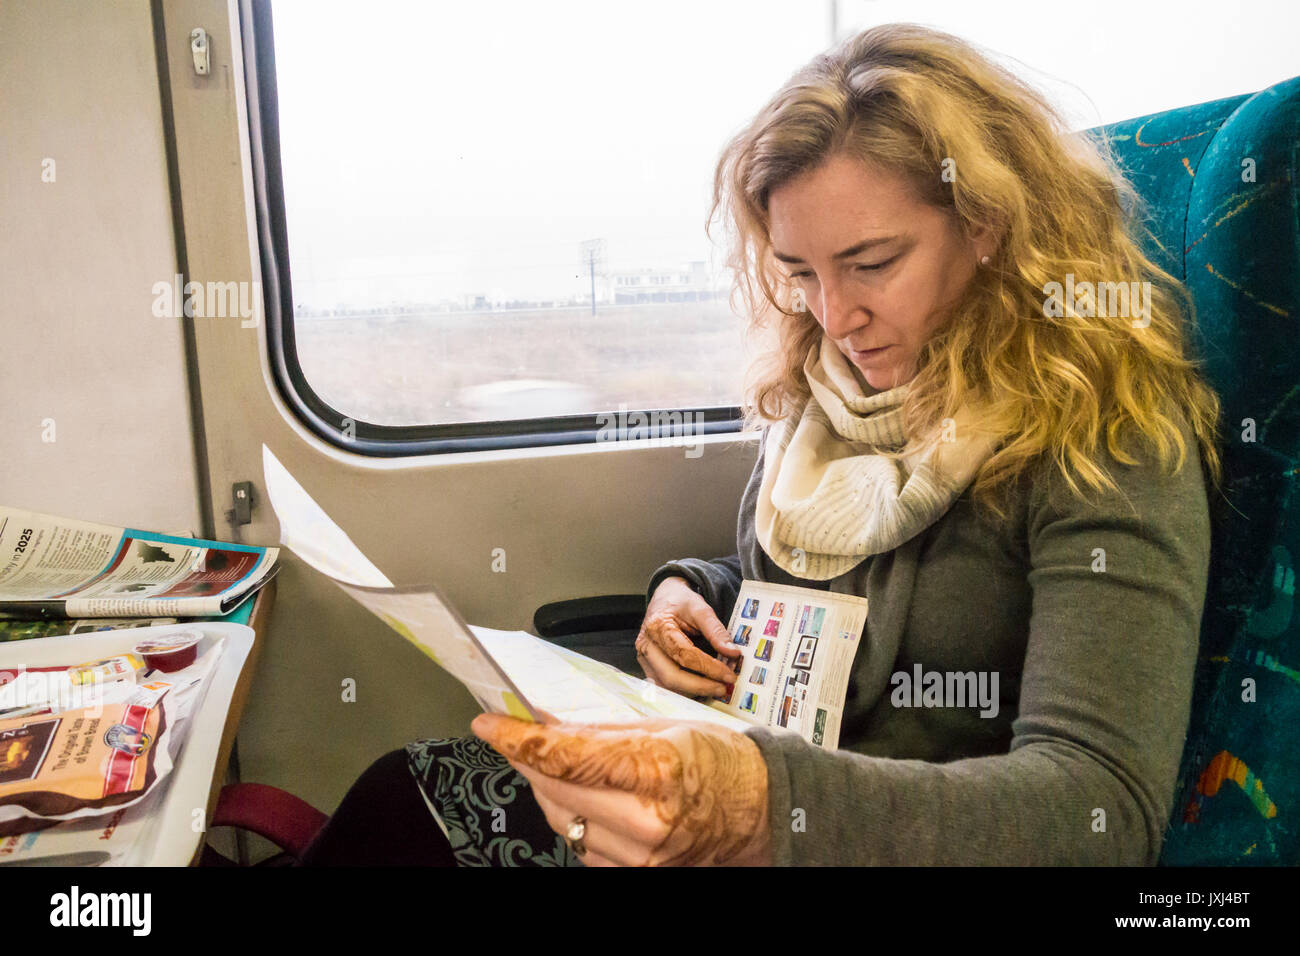 Eine Frau in einem Zug zwischen Delhi und Agra Indien studieren Reise-Informationen und Karten. Stockfoto